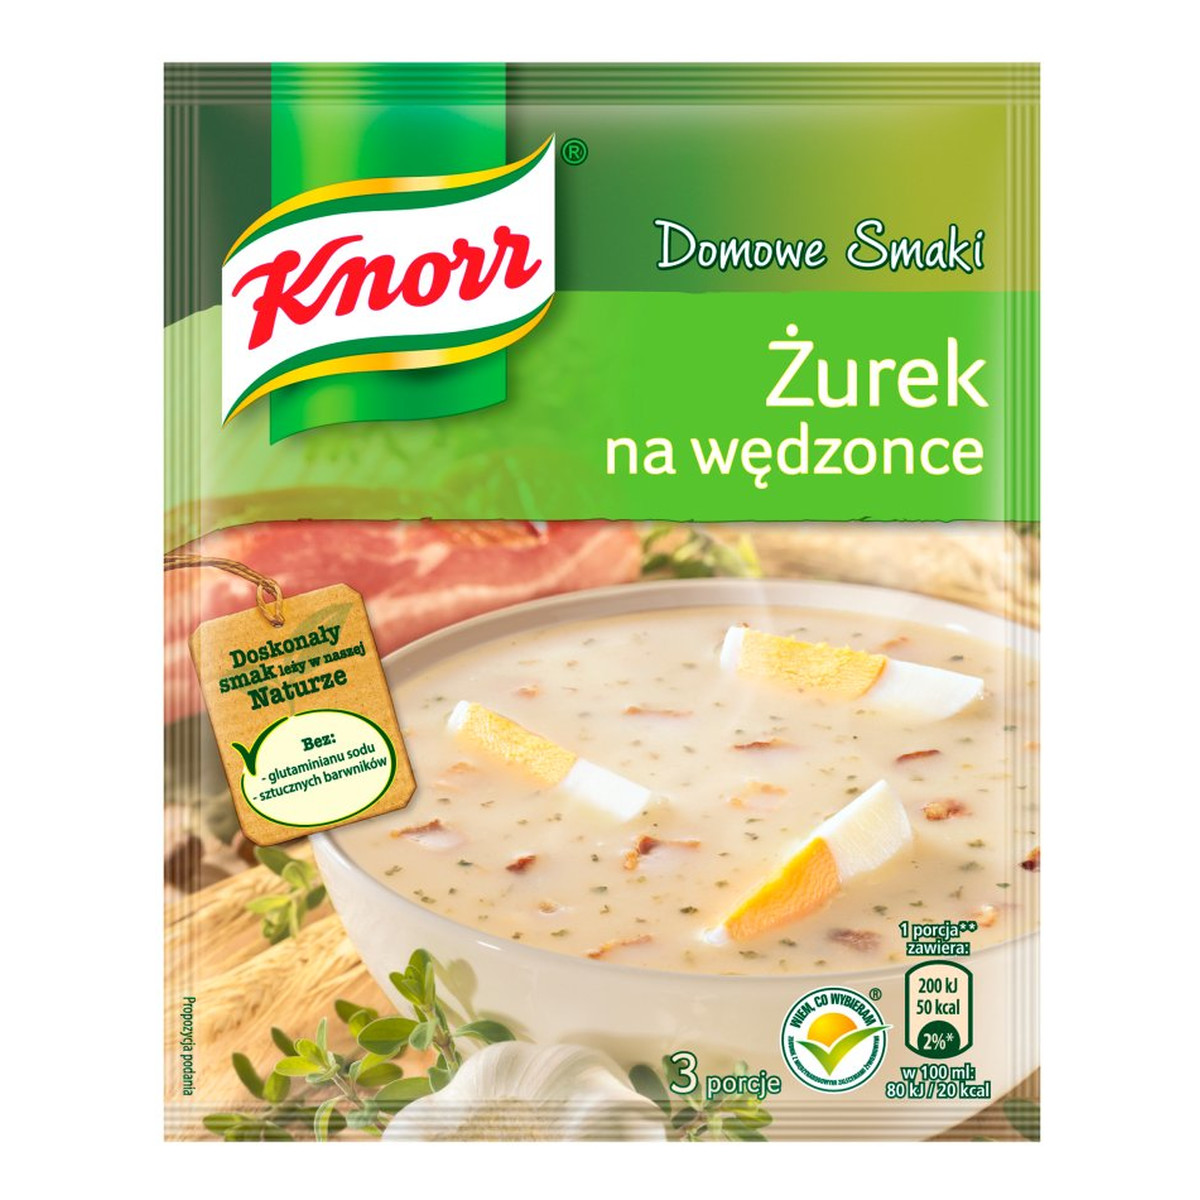 Knorr Domowe Smaki żurek na wędzonce 39g